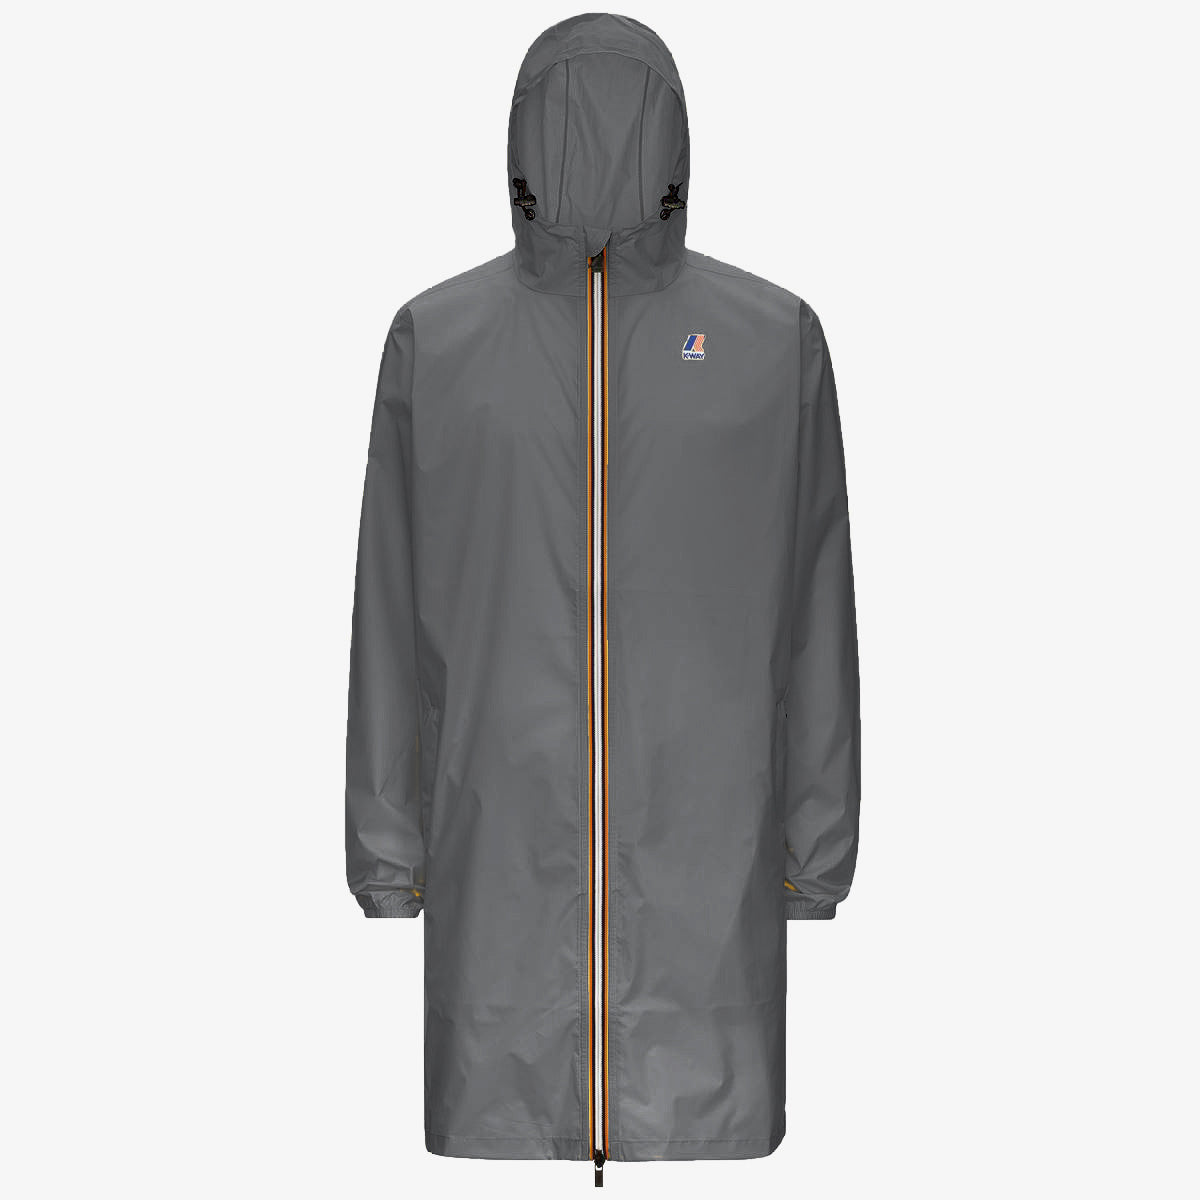 Eiffel - Unisex Waterproof Packable Long Rain Jacket in Grey Smoke